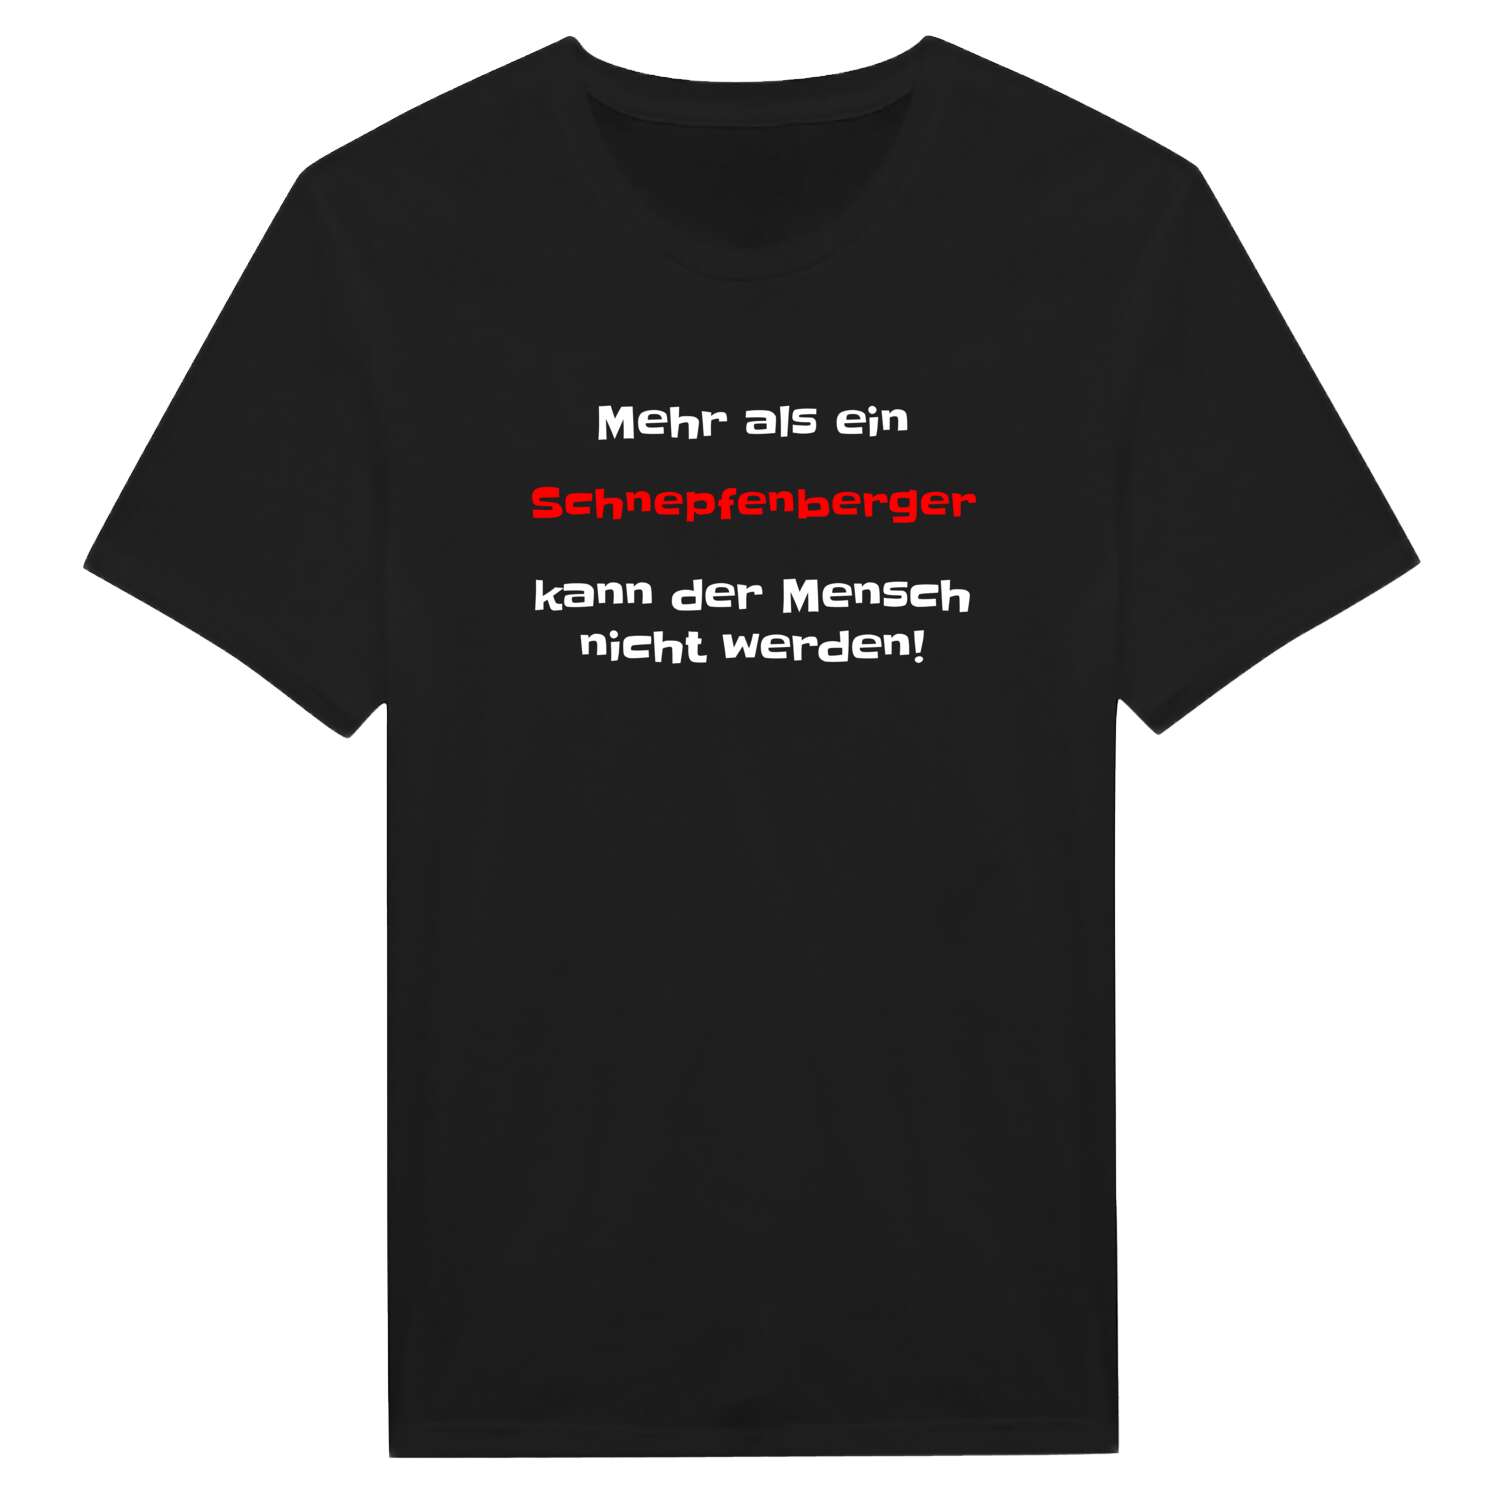 Schnepfenberg T-Shirt »Mehr als ein«